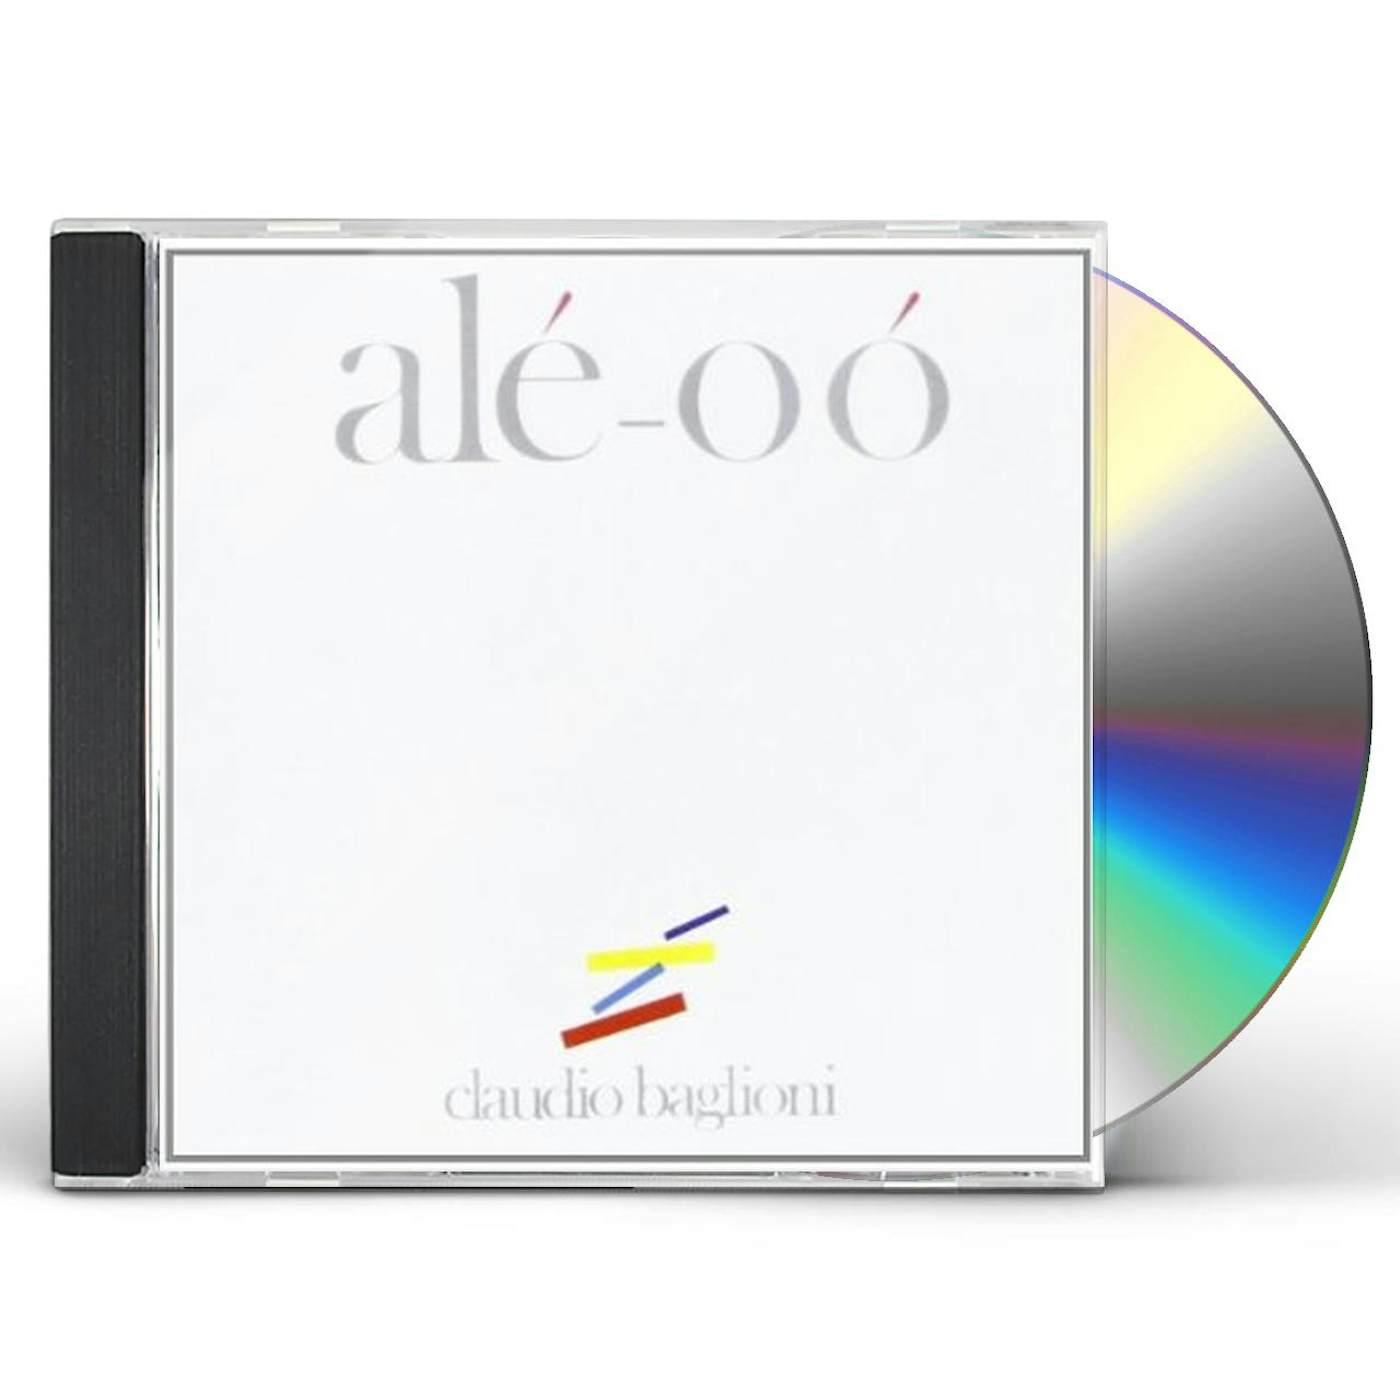 Claudio Baglioni ALE O O CD